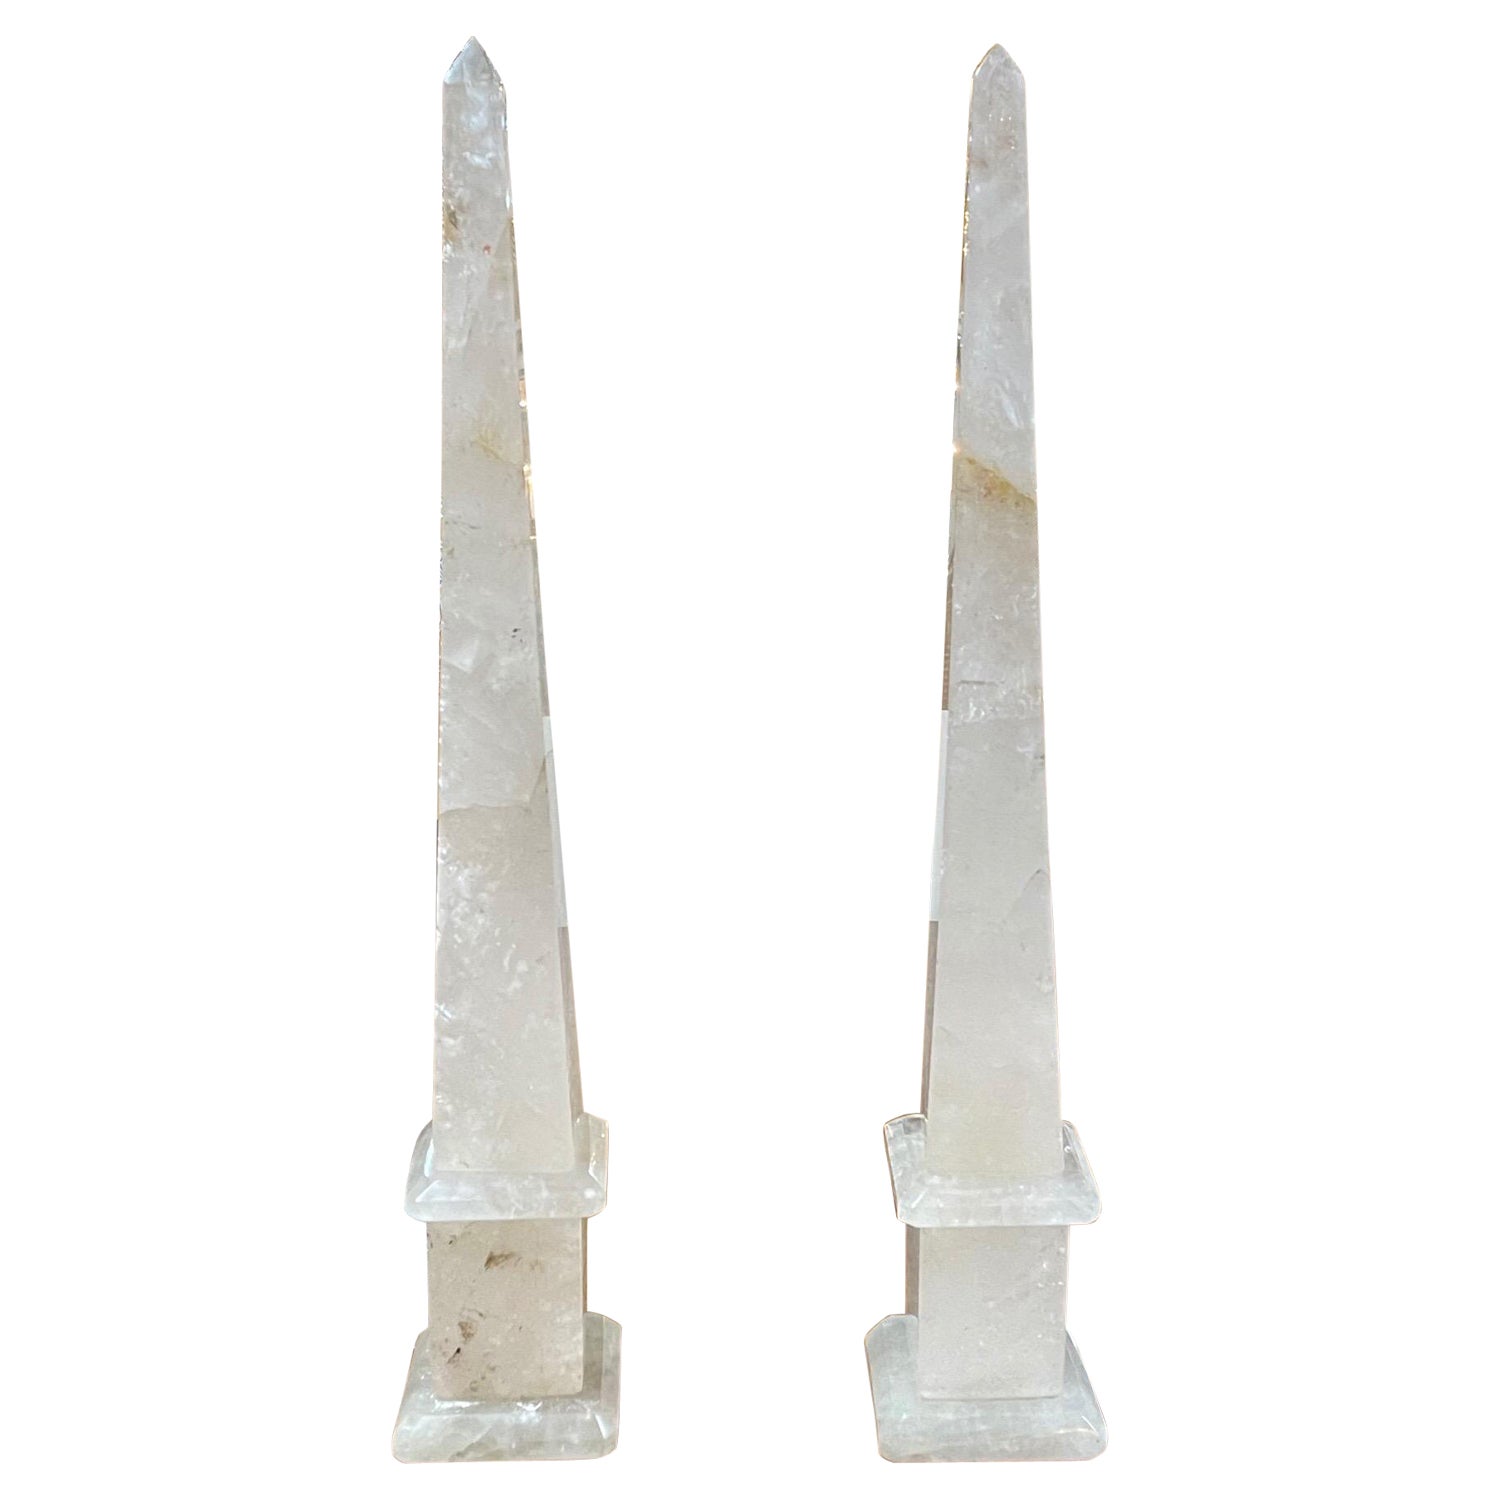 Pair of Polished Rock Crystal Obelisks from Brazil For Sale